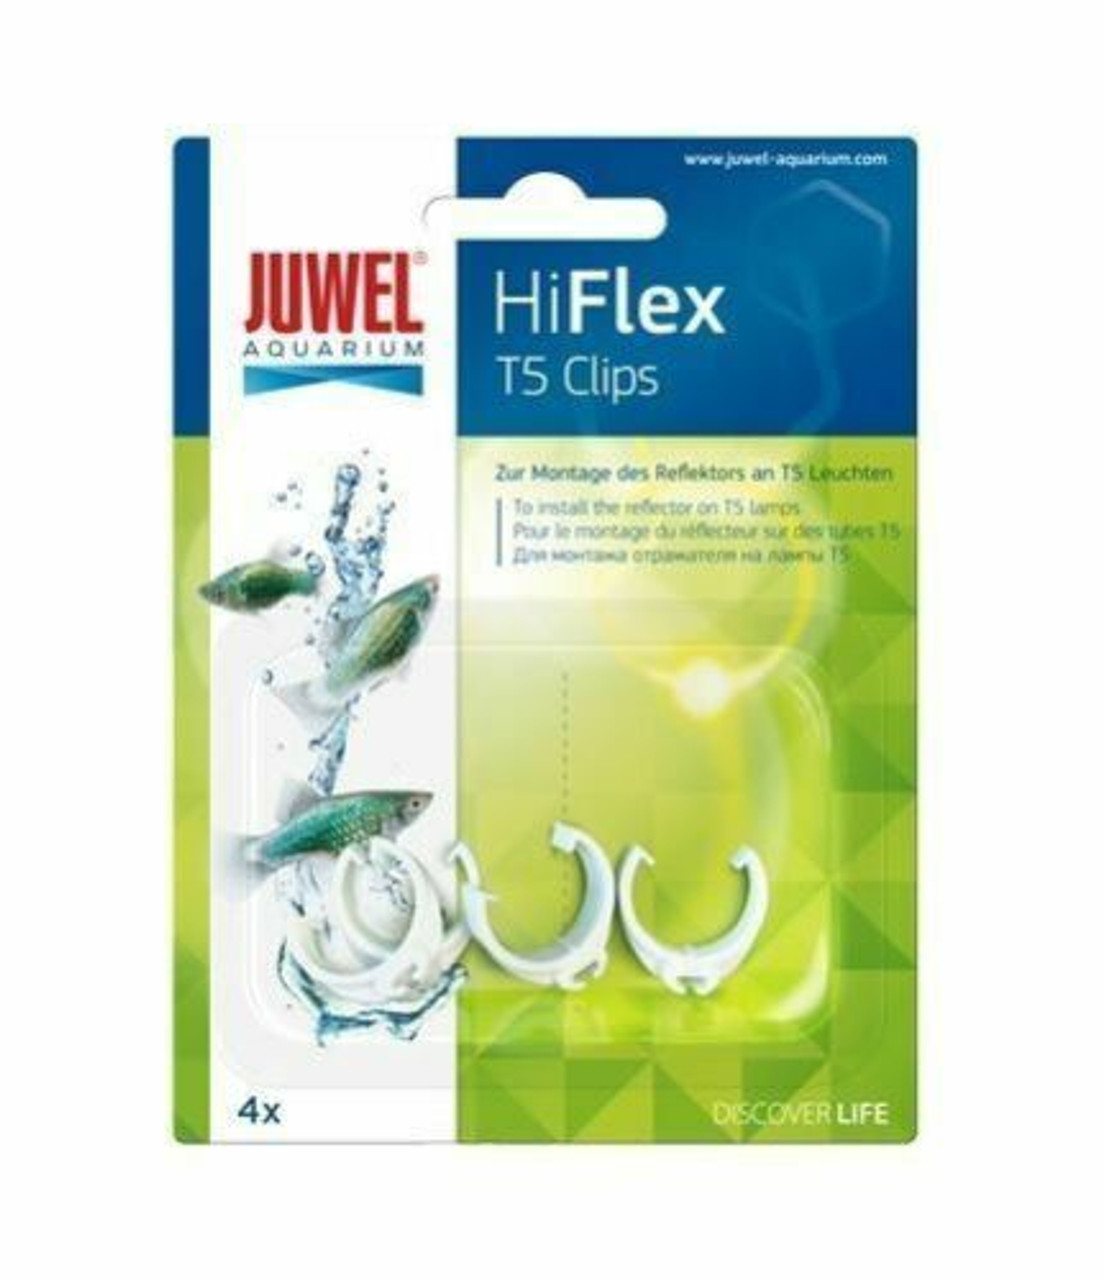 Juwel Hi-Flex Clips T5